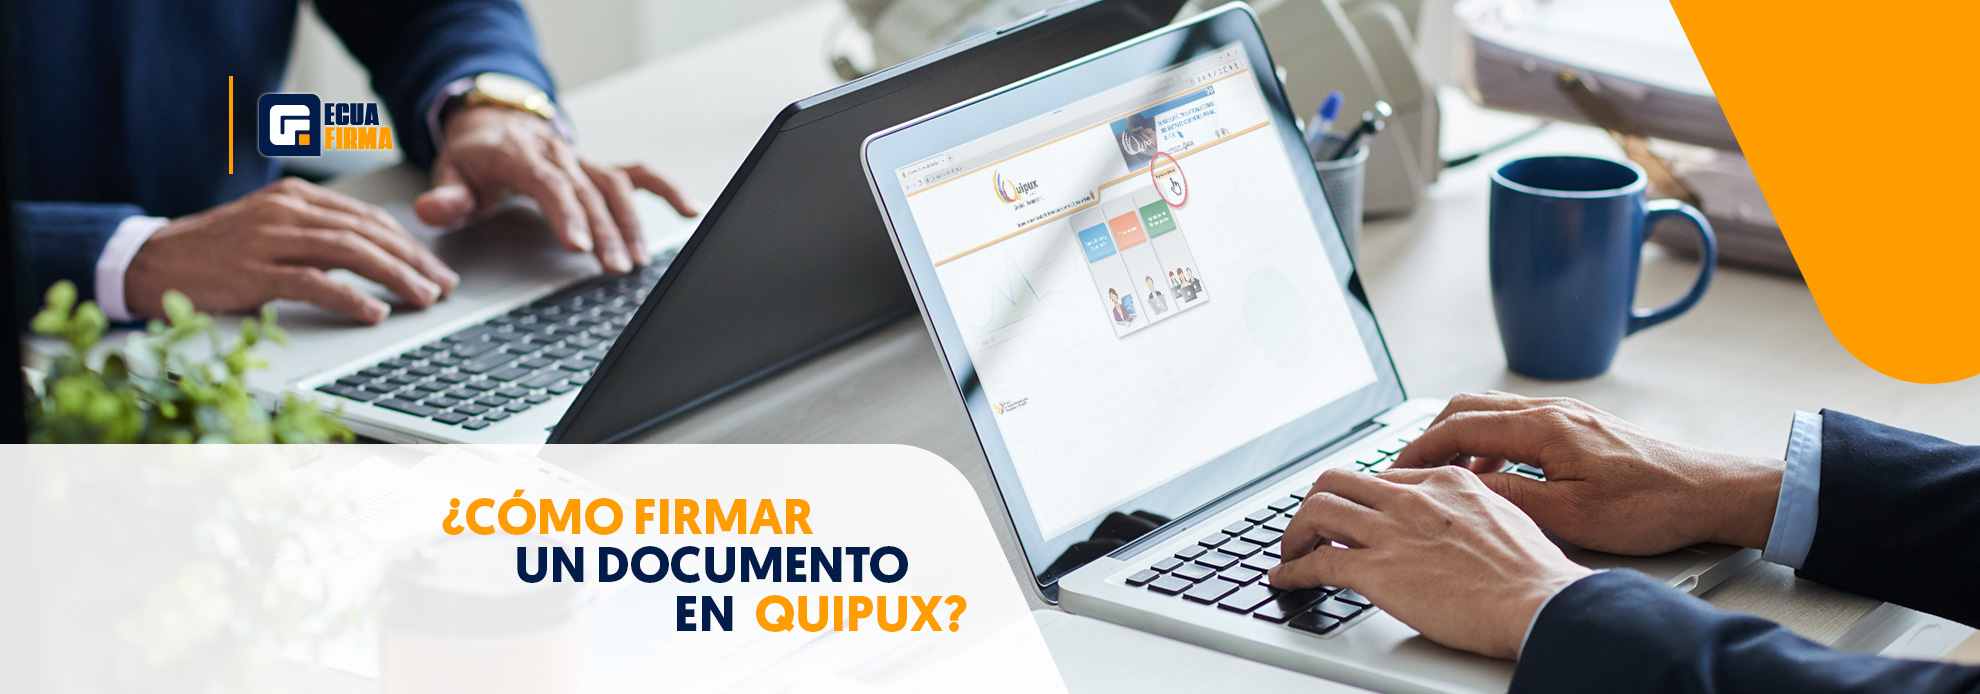 ¿Cómo firmar un documento en Quipux?